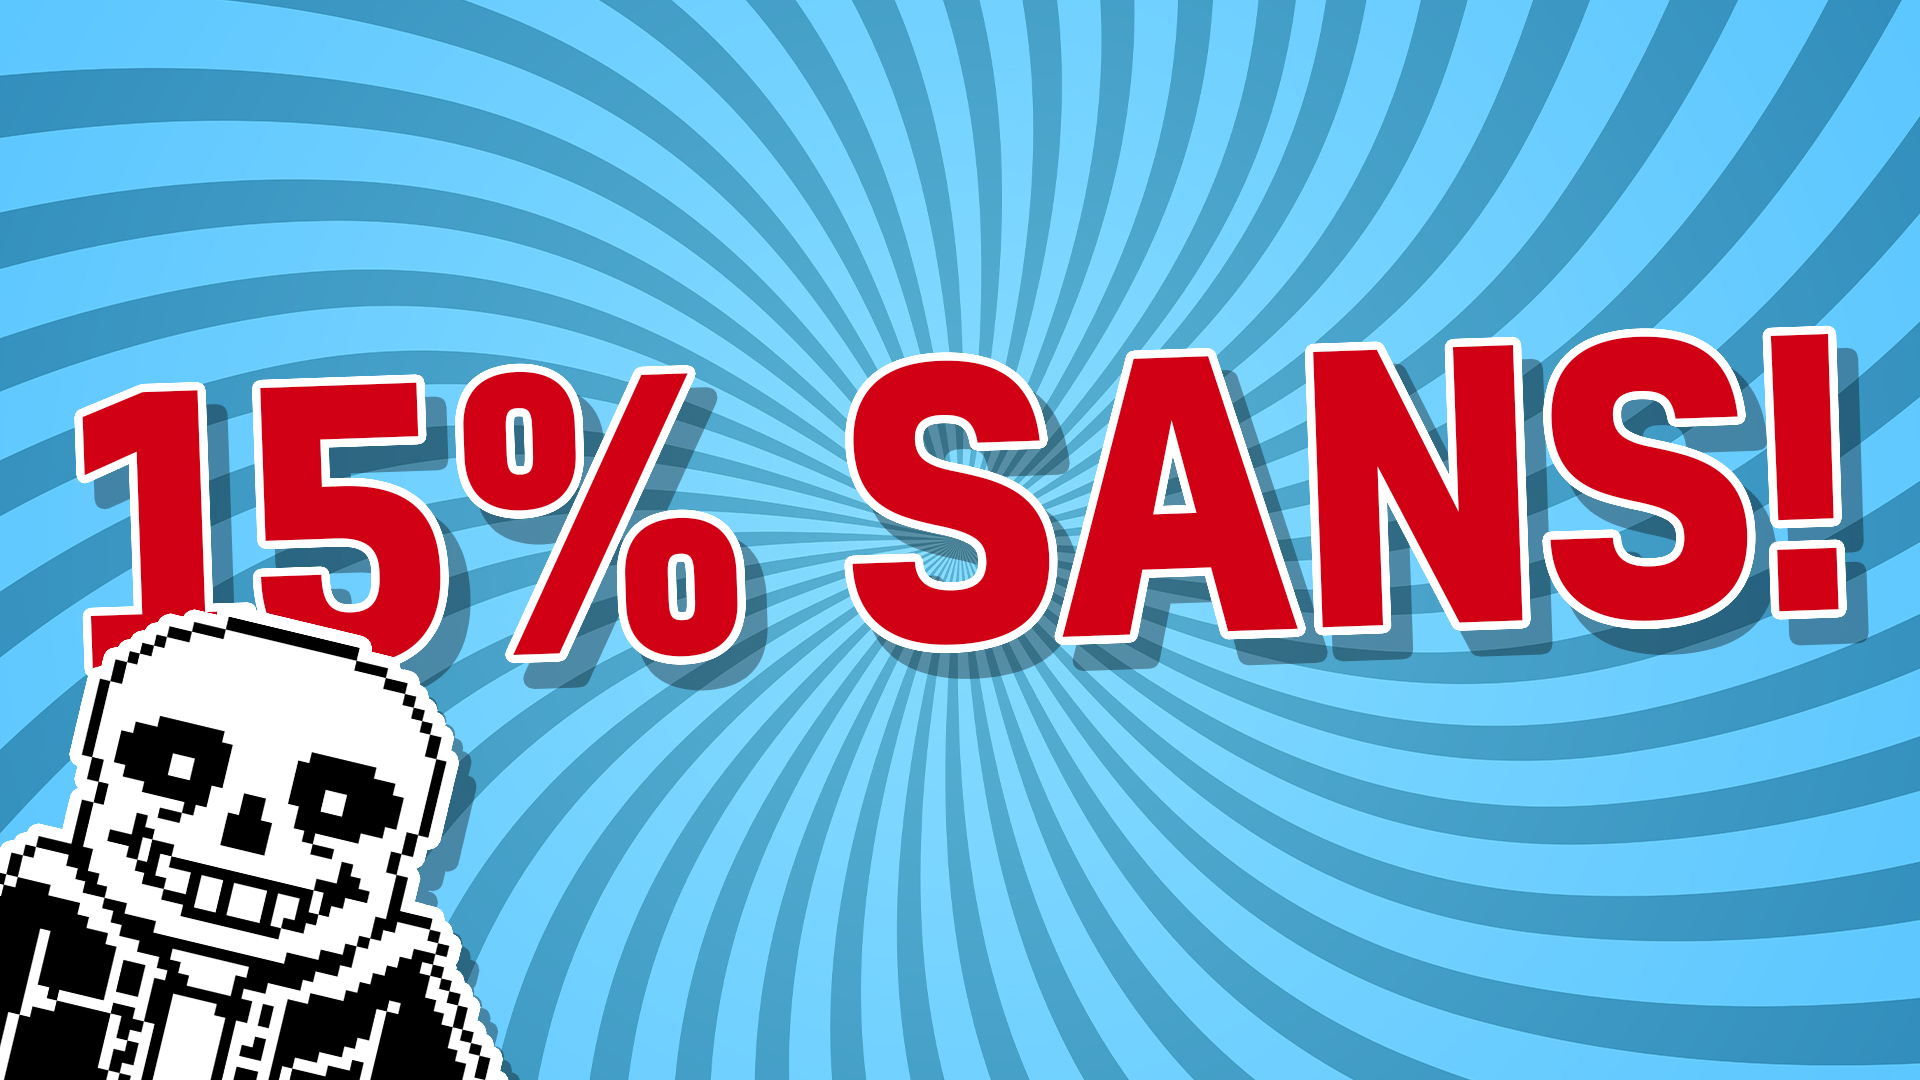 15% SANS